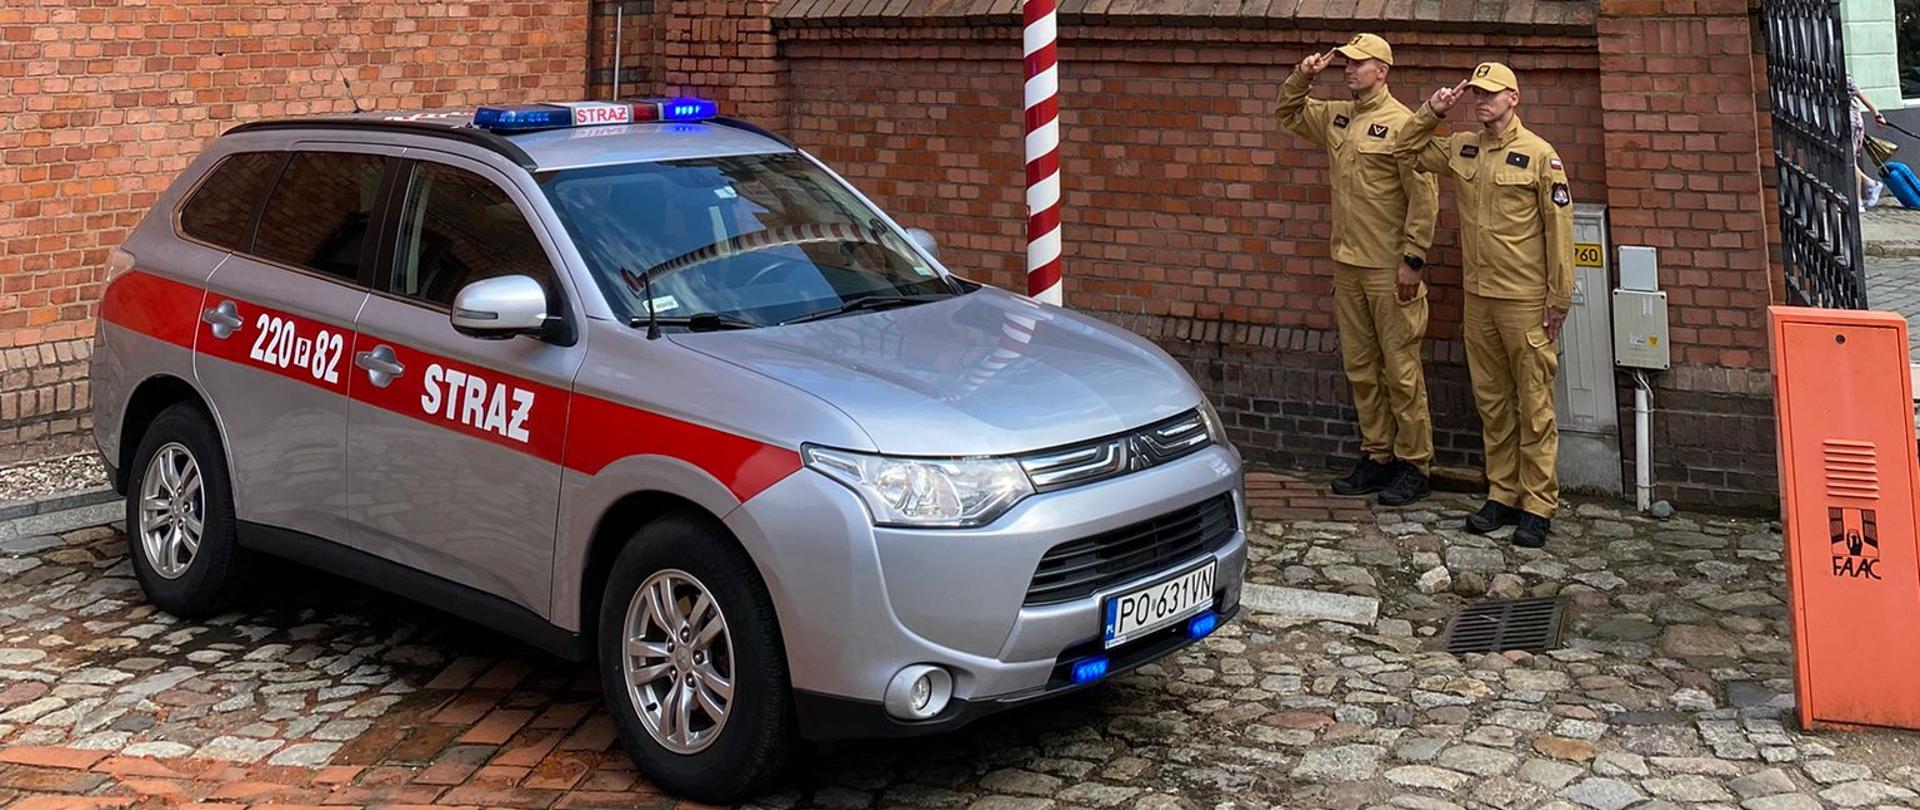 strażacy stoją prze remizą i samochodami strażacki oddając hołd bohaterom powstania warszawskiego